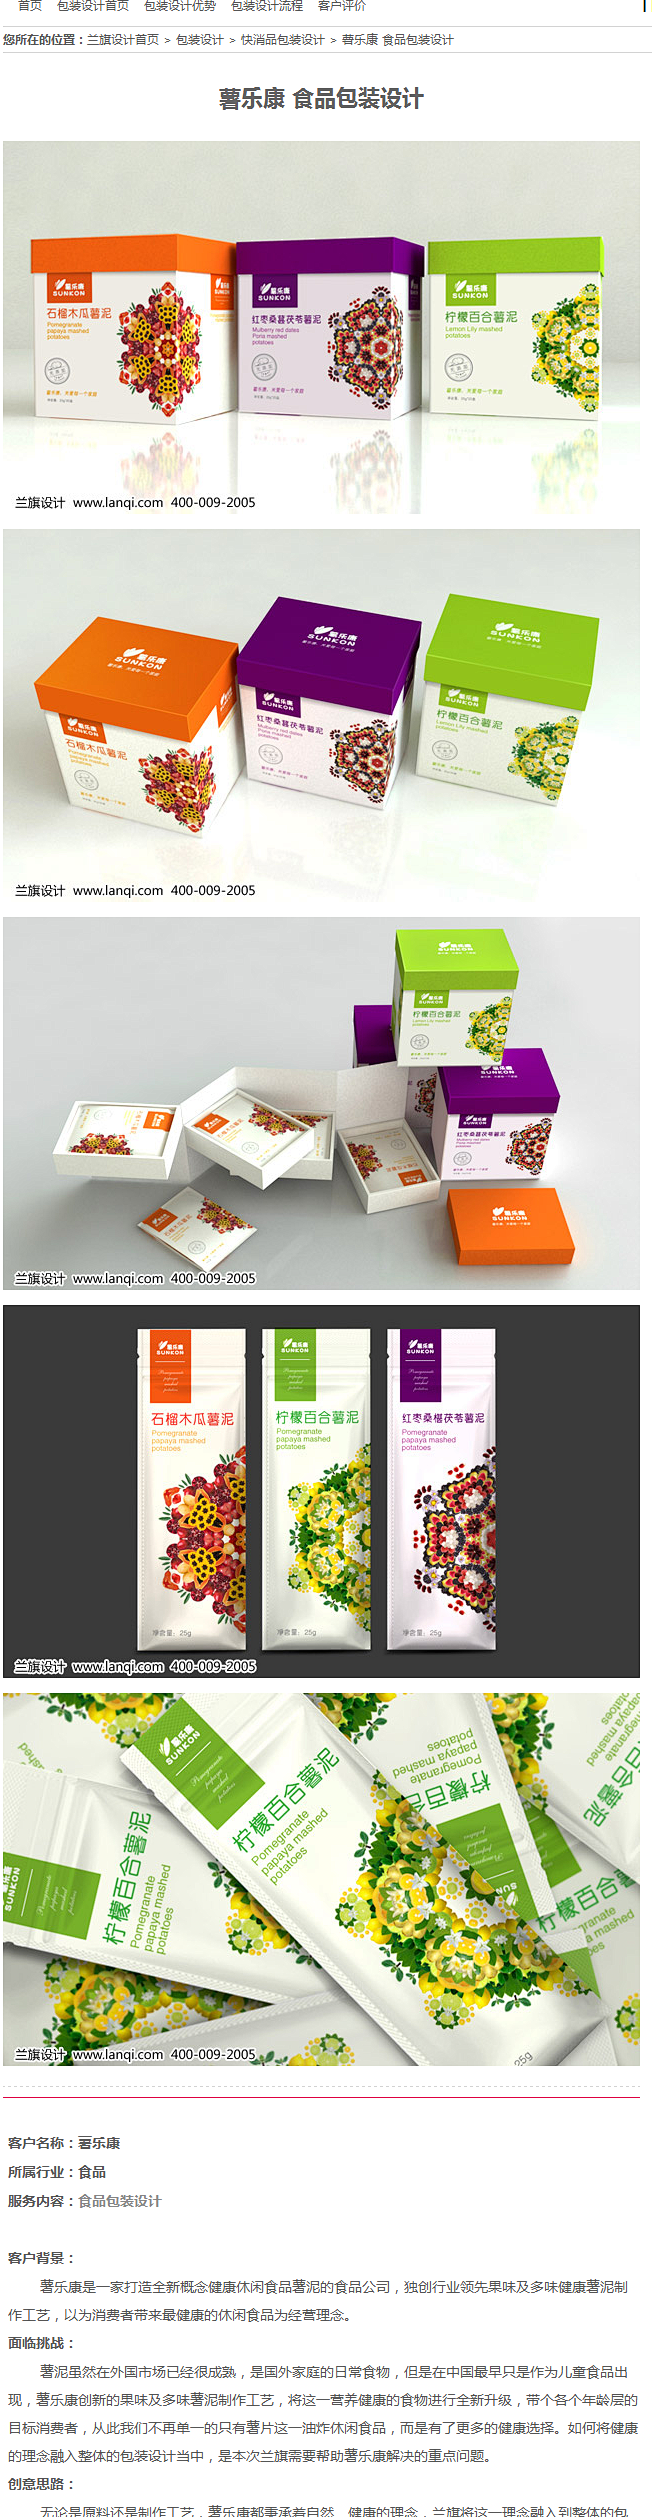 薯乐康 食品包装设计-包装设计-兰旗品牌...